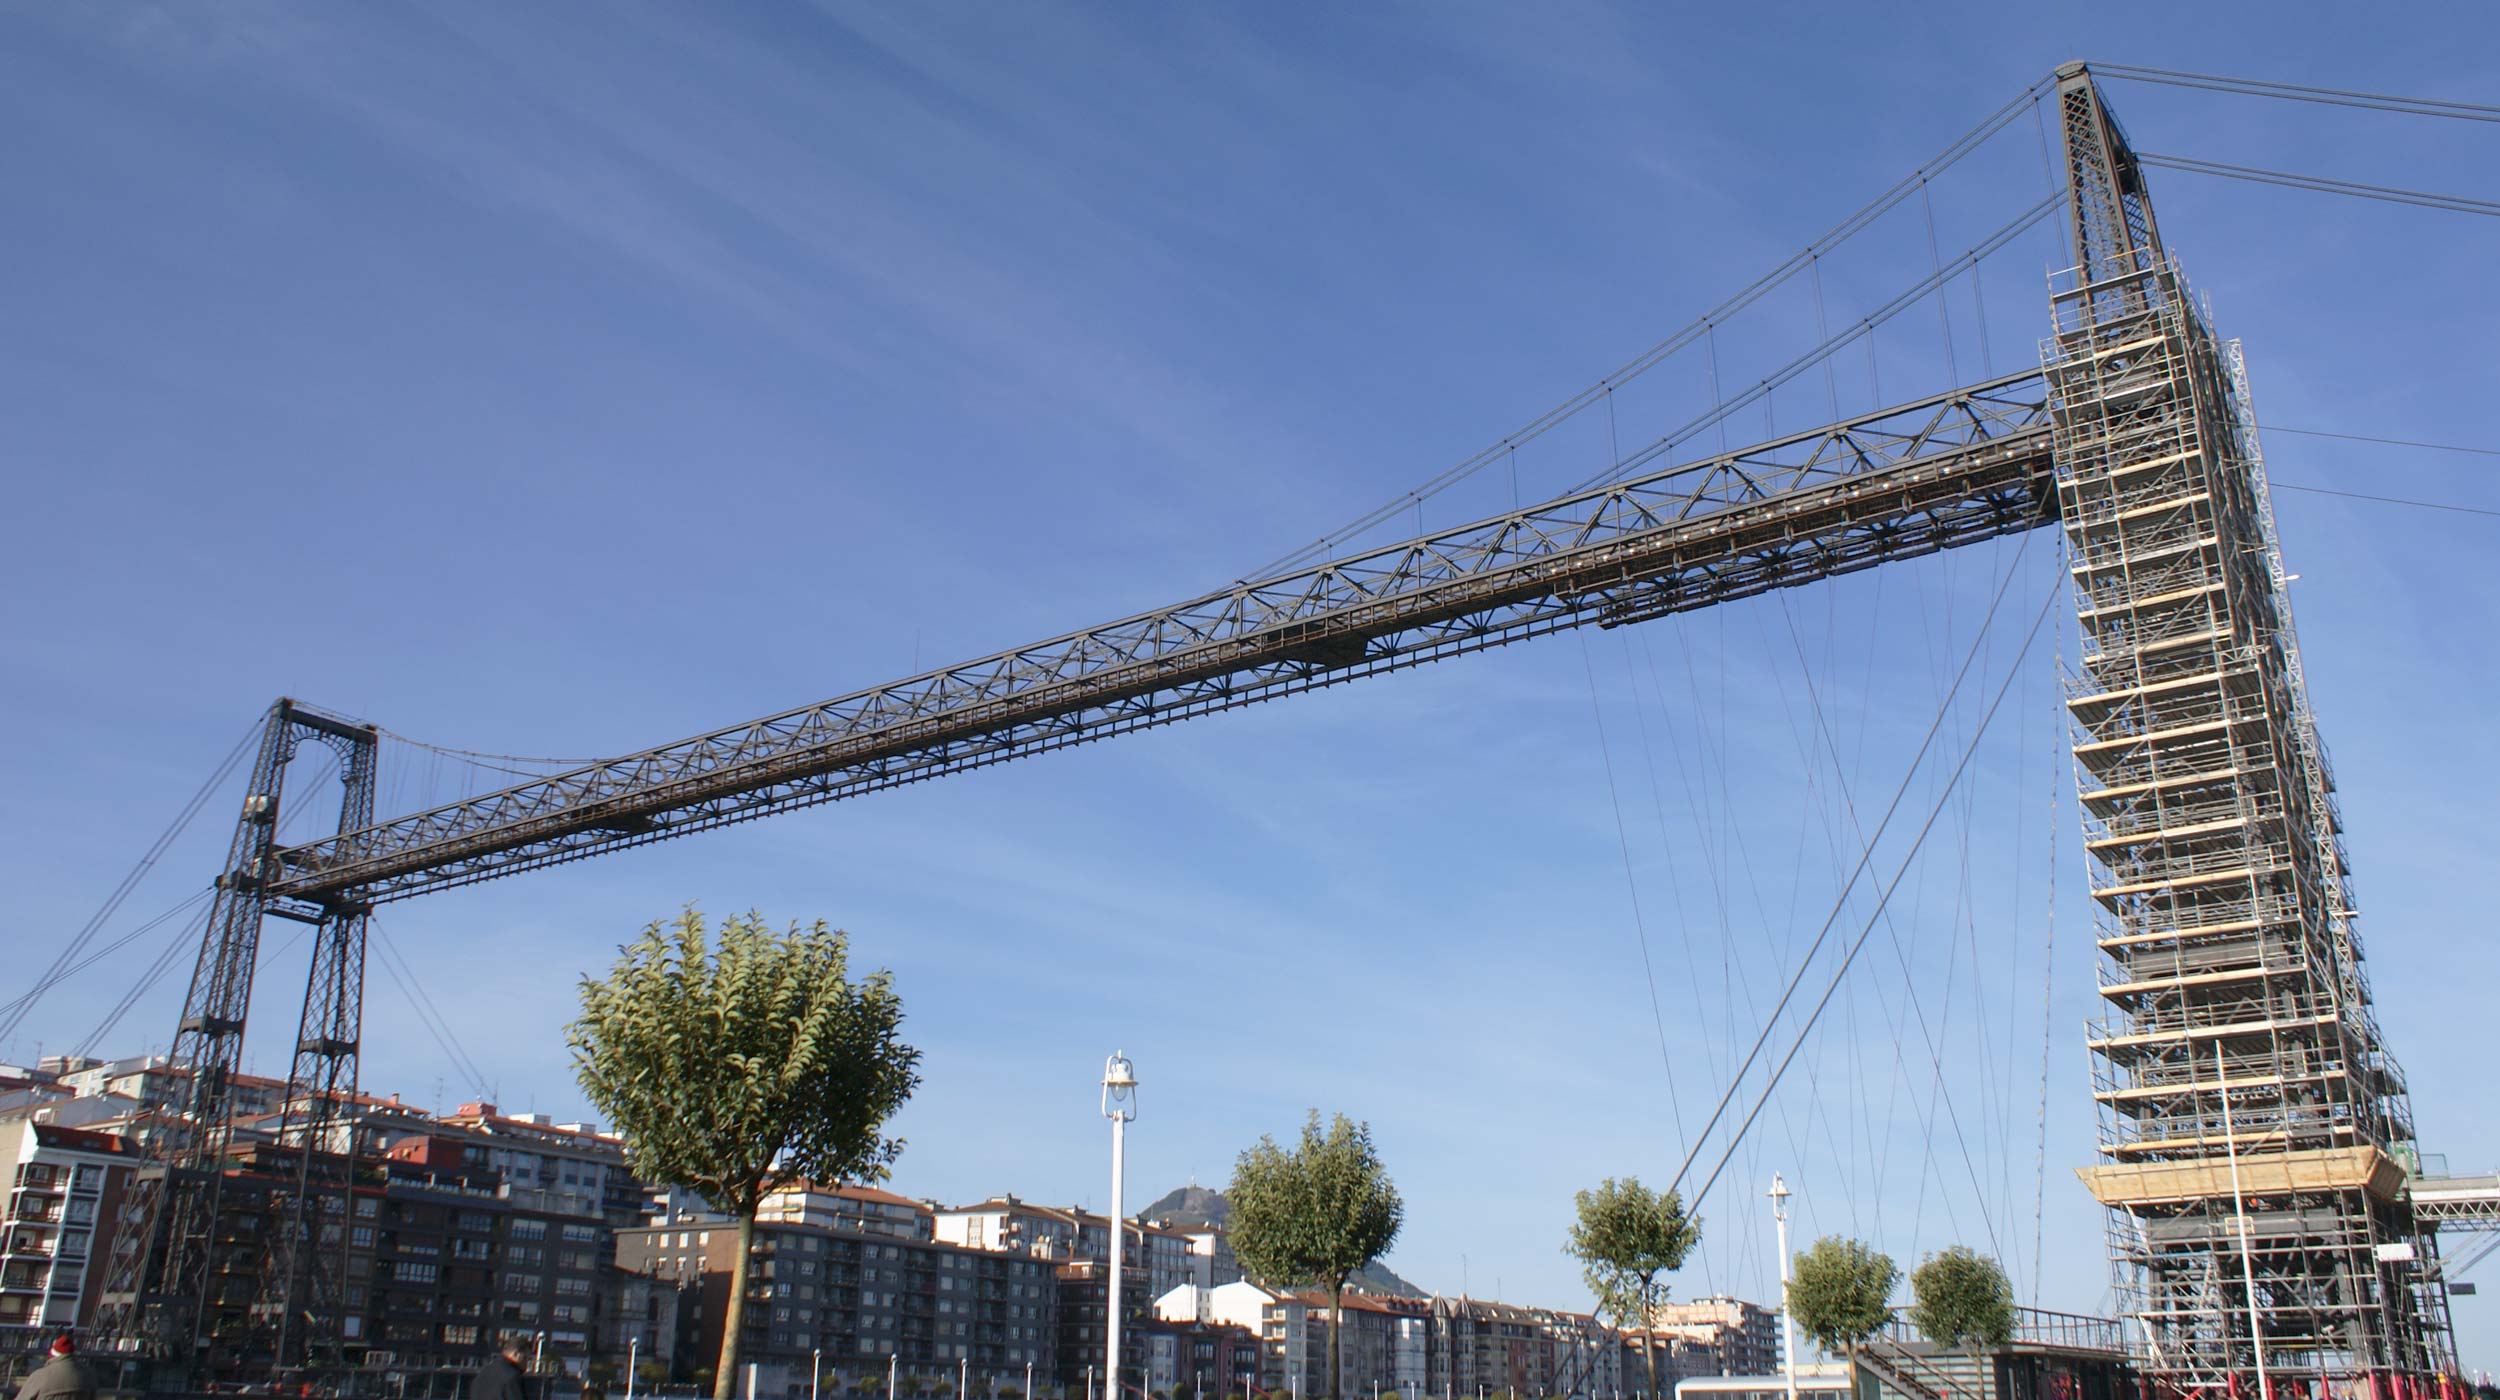 Declarado Patrimonio de la Humanidad por la Unesco en 2006, el Puente Colgante o Puente de Vizcaya simboliza la Revolución Industrial de finales del siglo XIX.